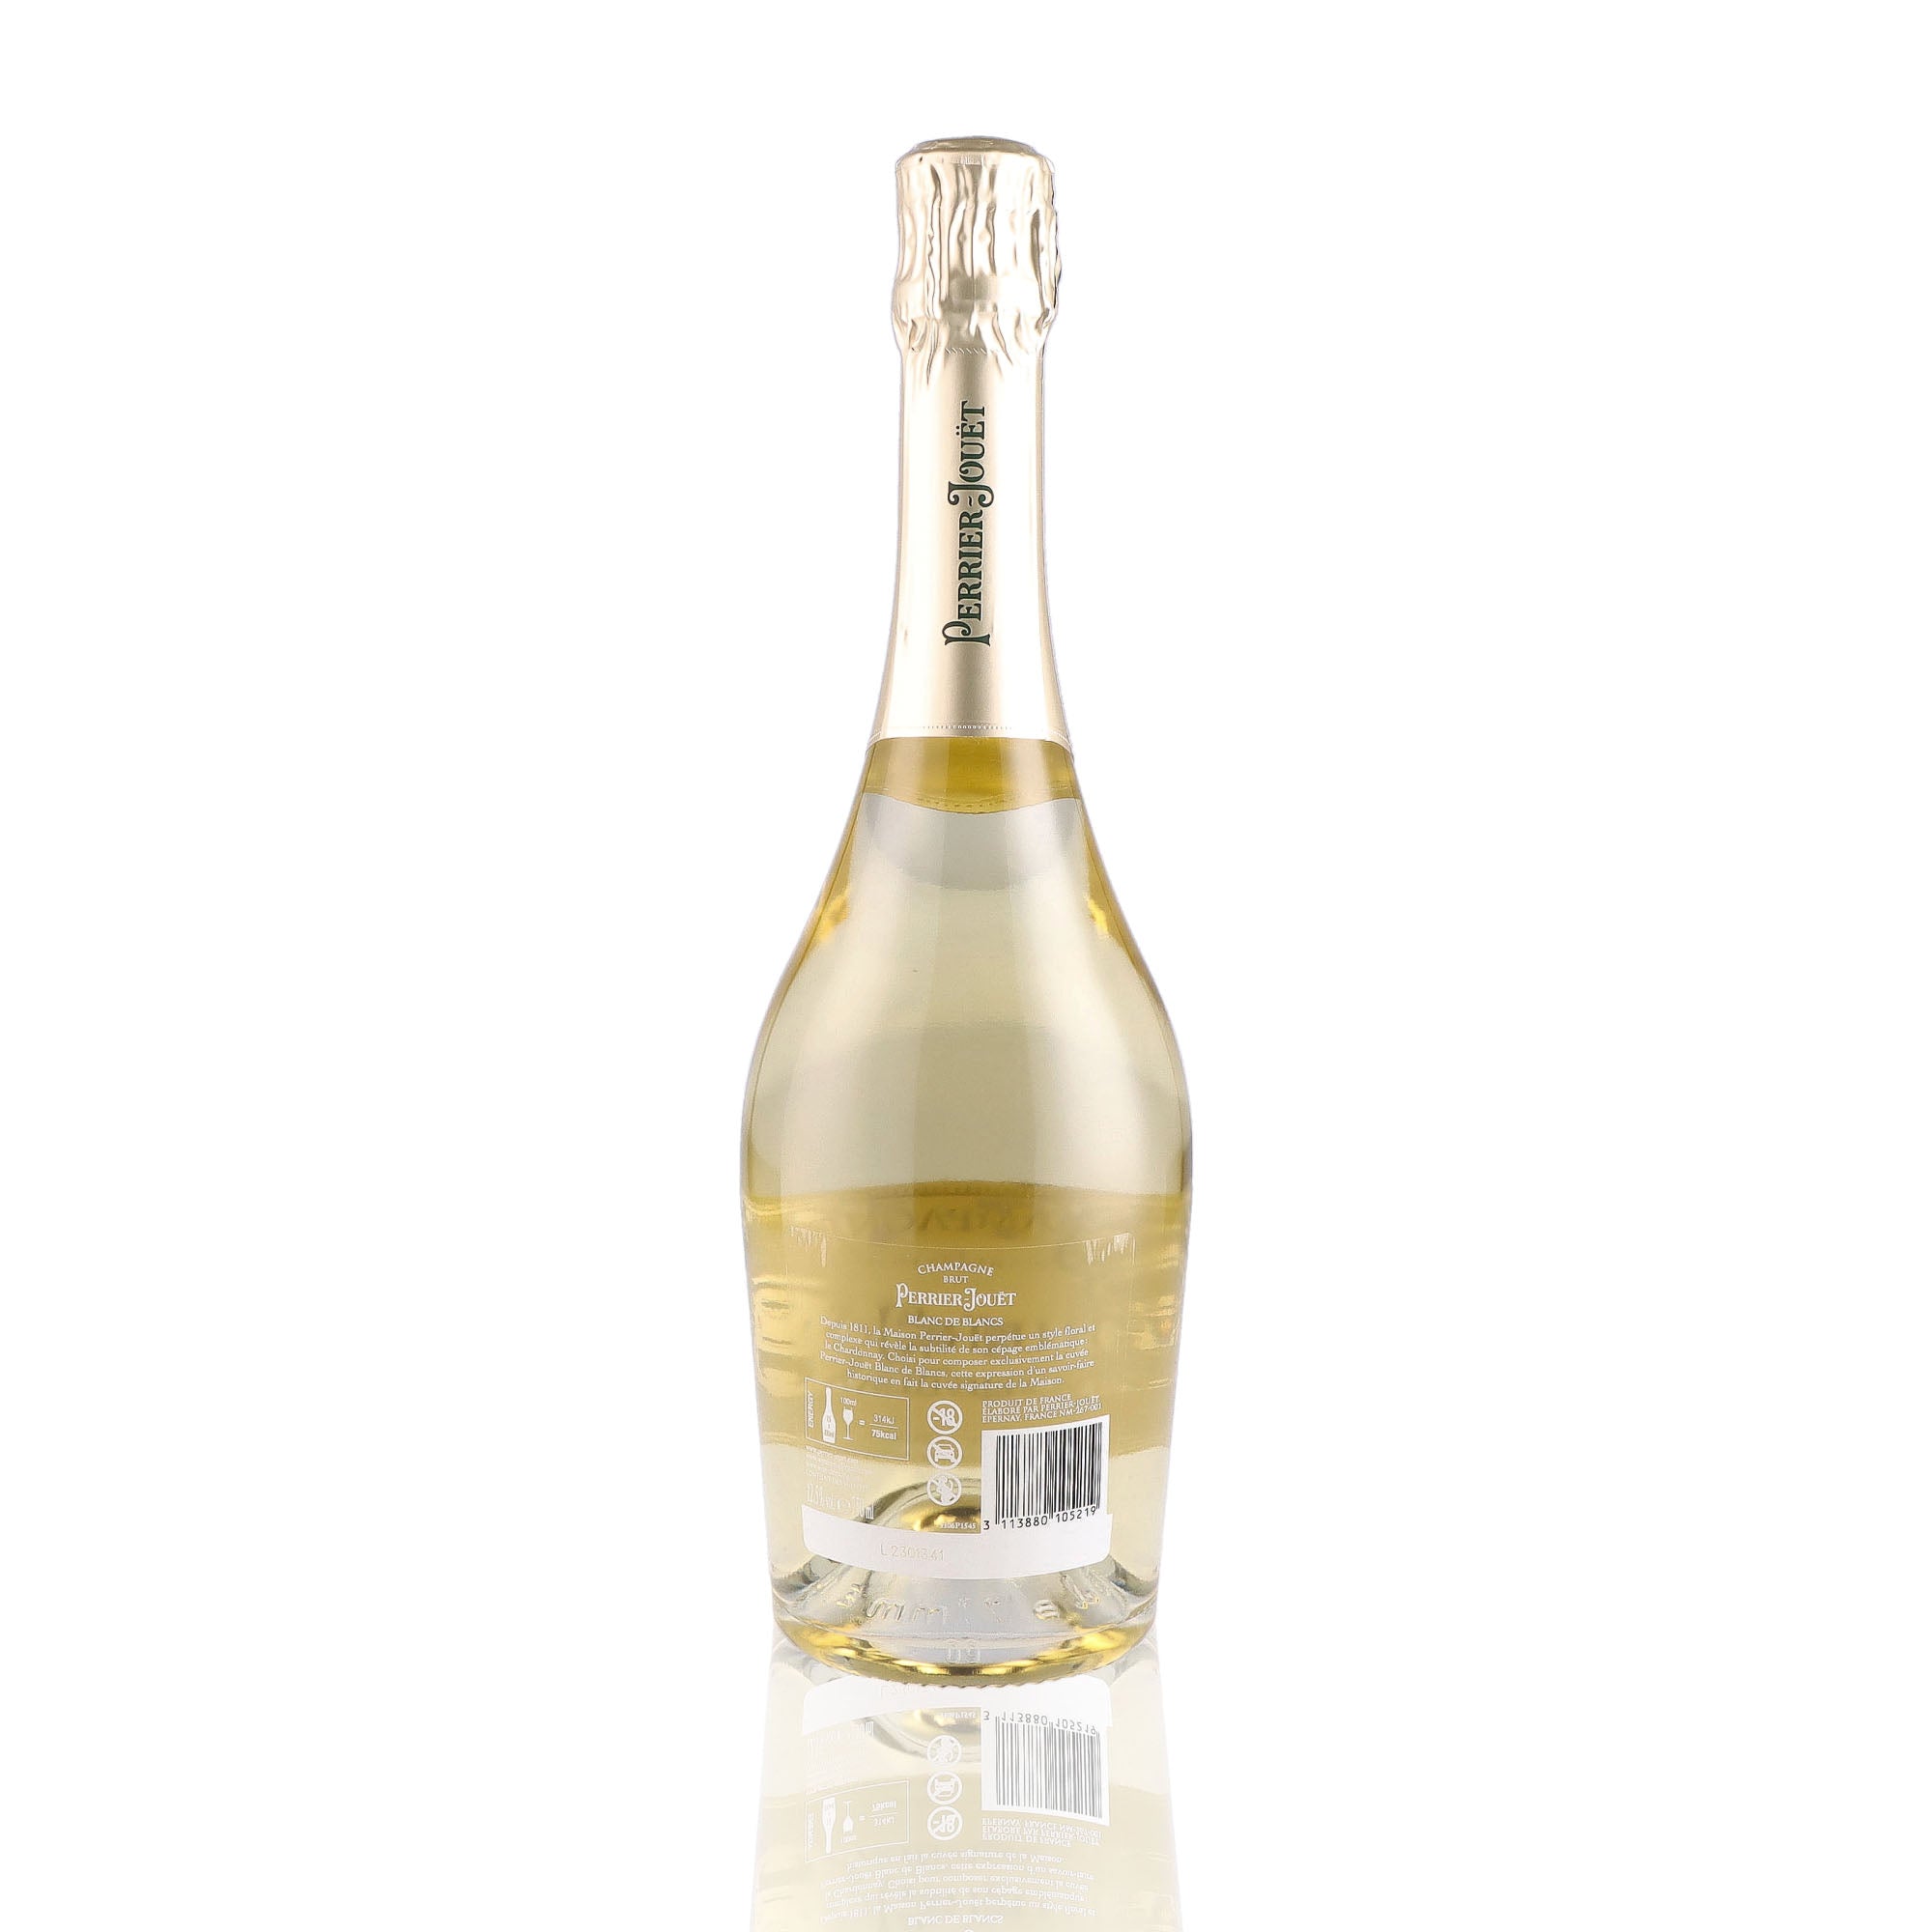 Une bouteille de champagne de la marque Perrier Jouët, de type blanc de blancs.